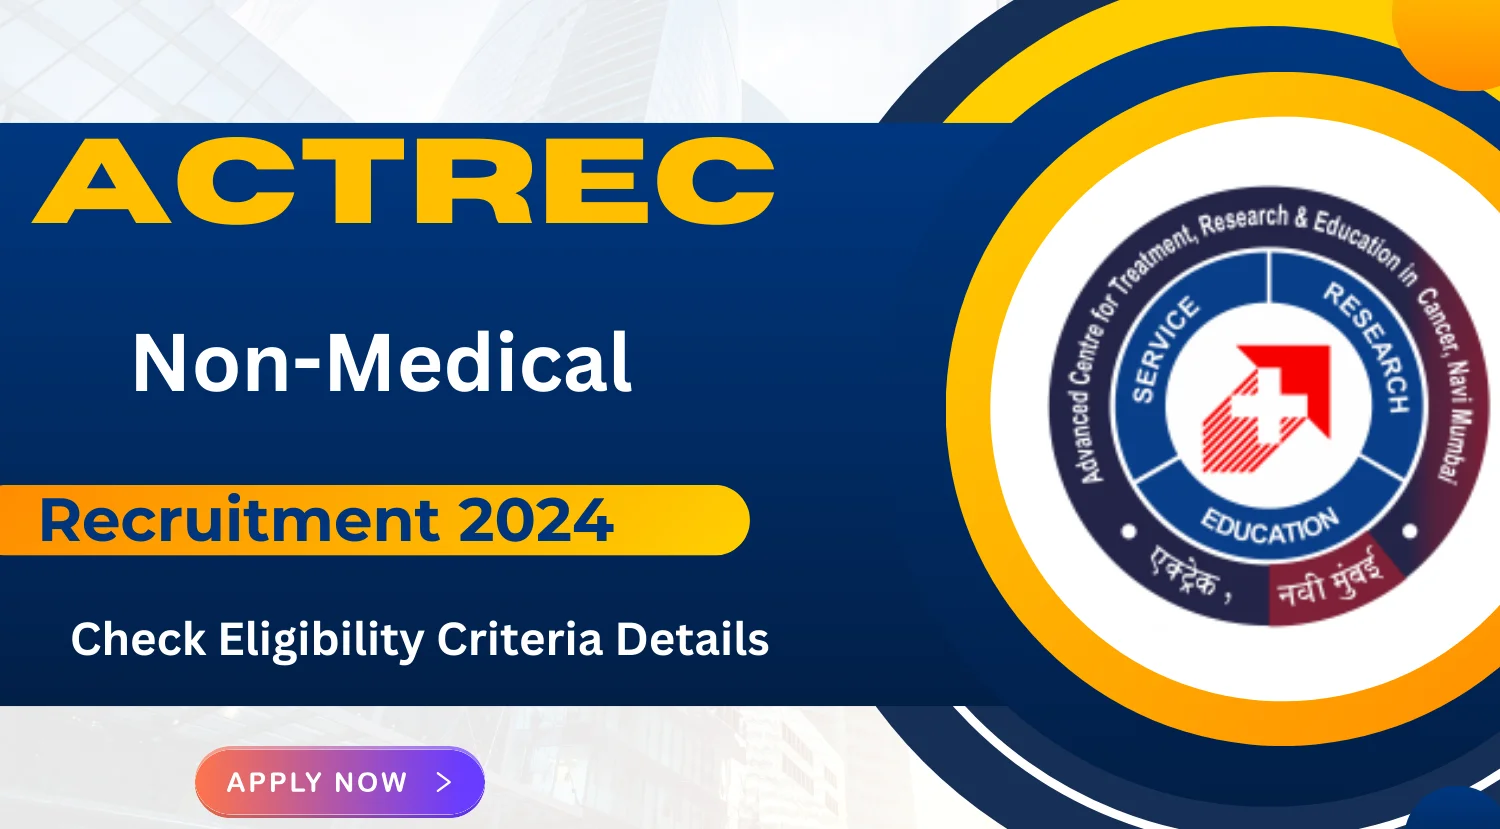 ACTREC Non-Medical Recruitment 2024